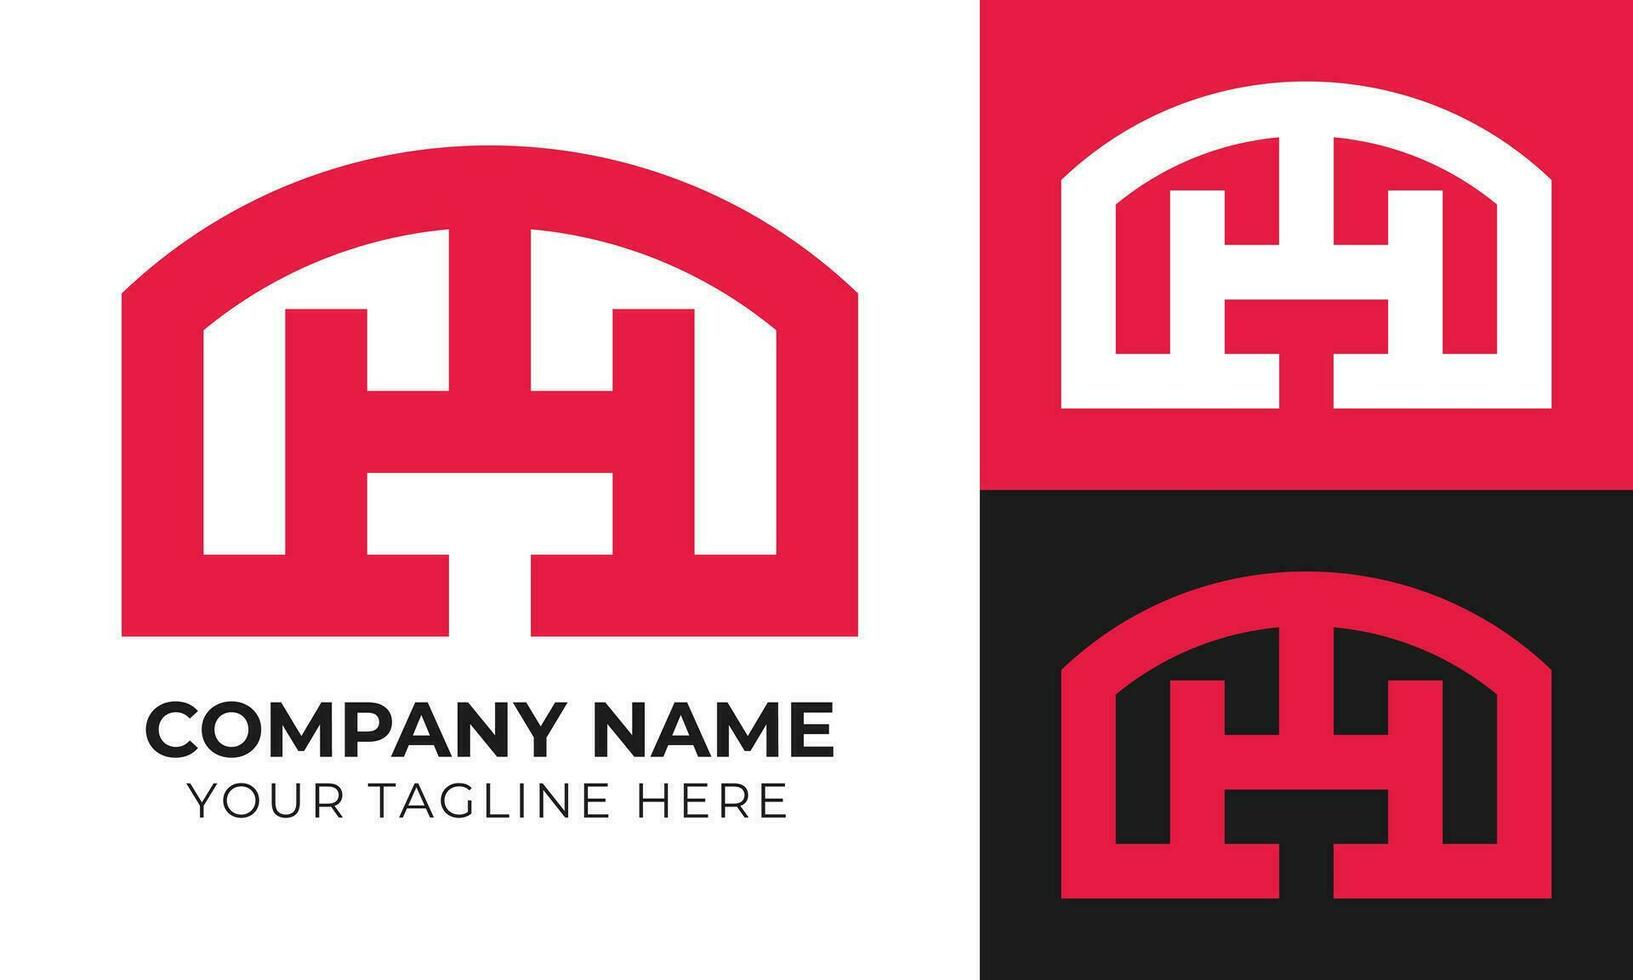 Créatif abstrait moderne minimal h lettre Accueil logo conception modèle gratuit vecteur